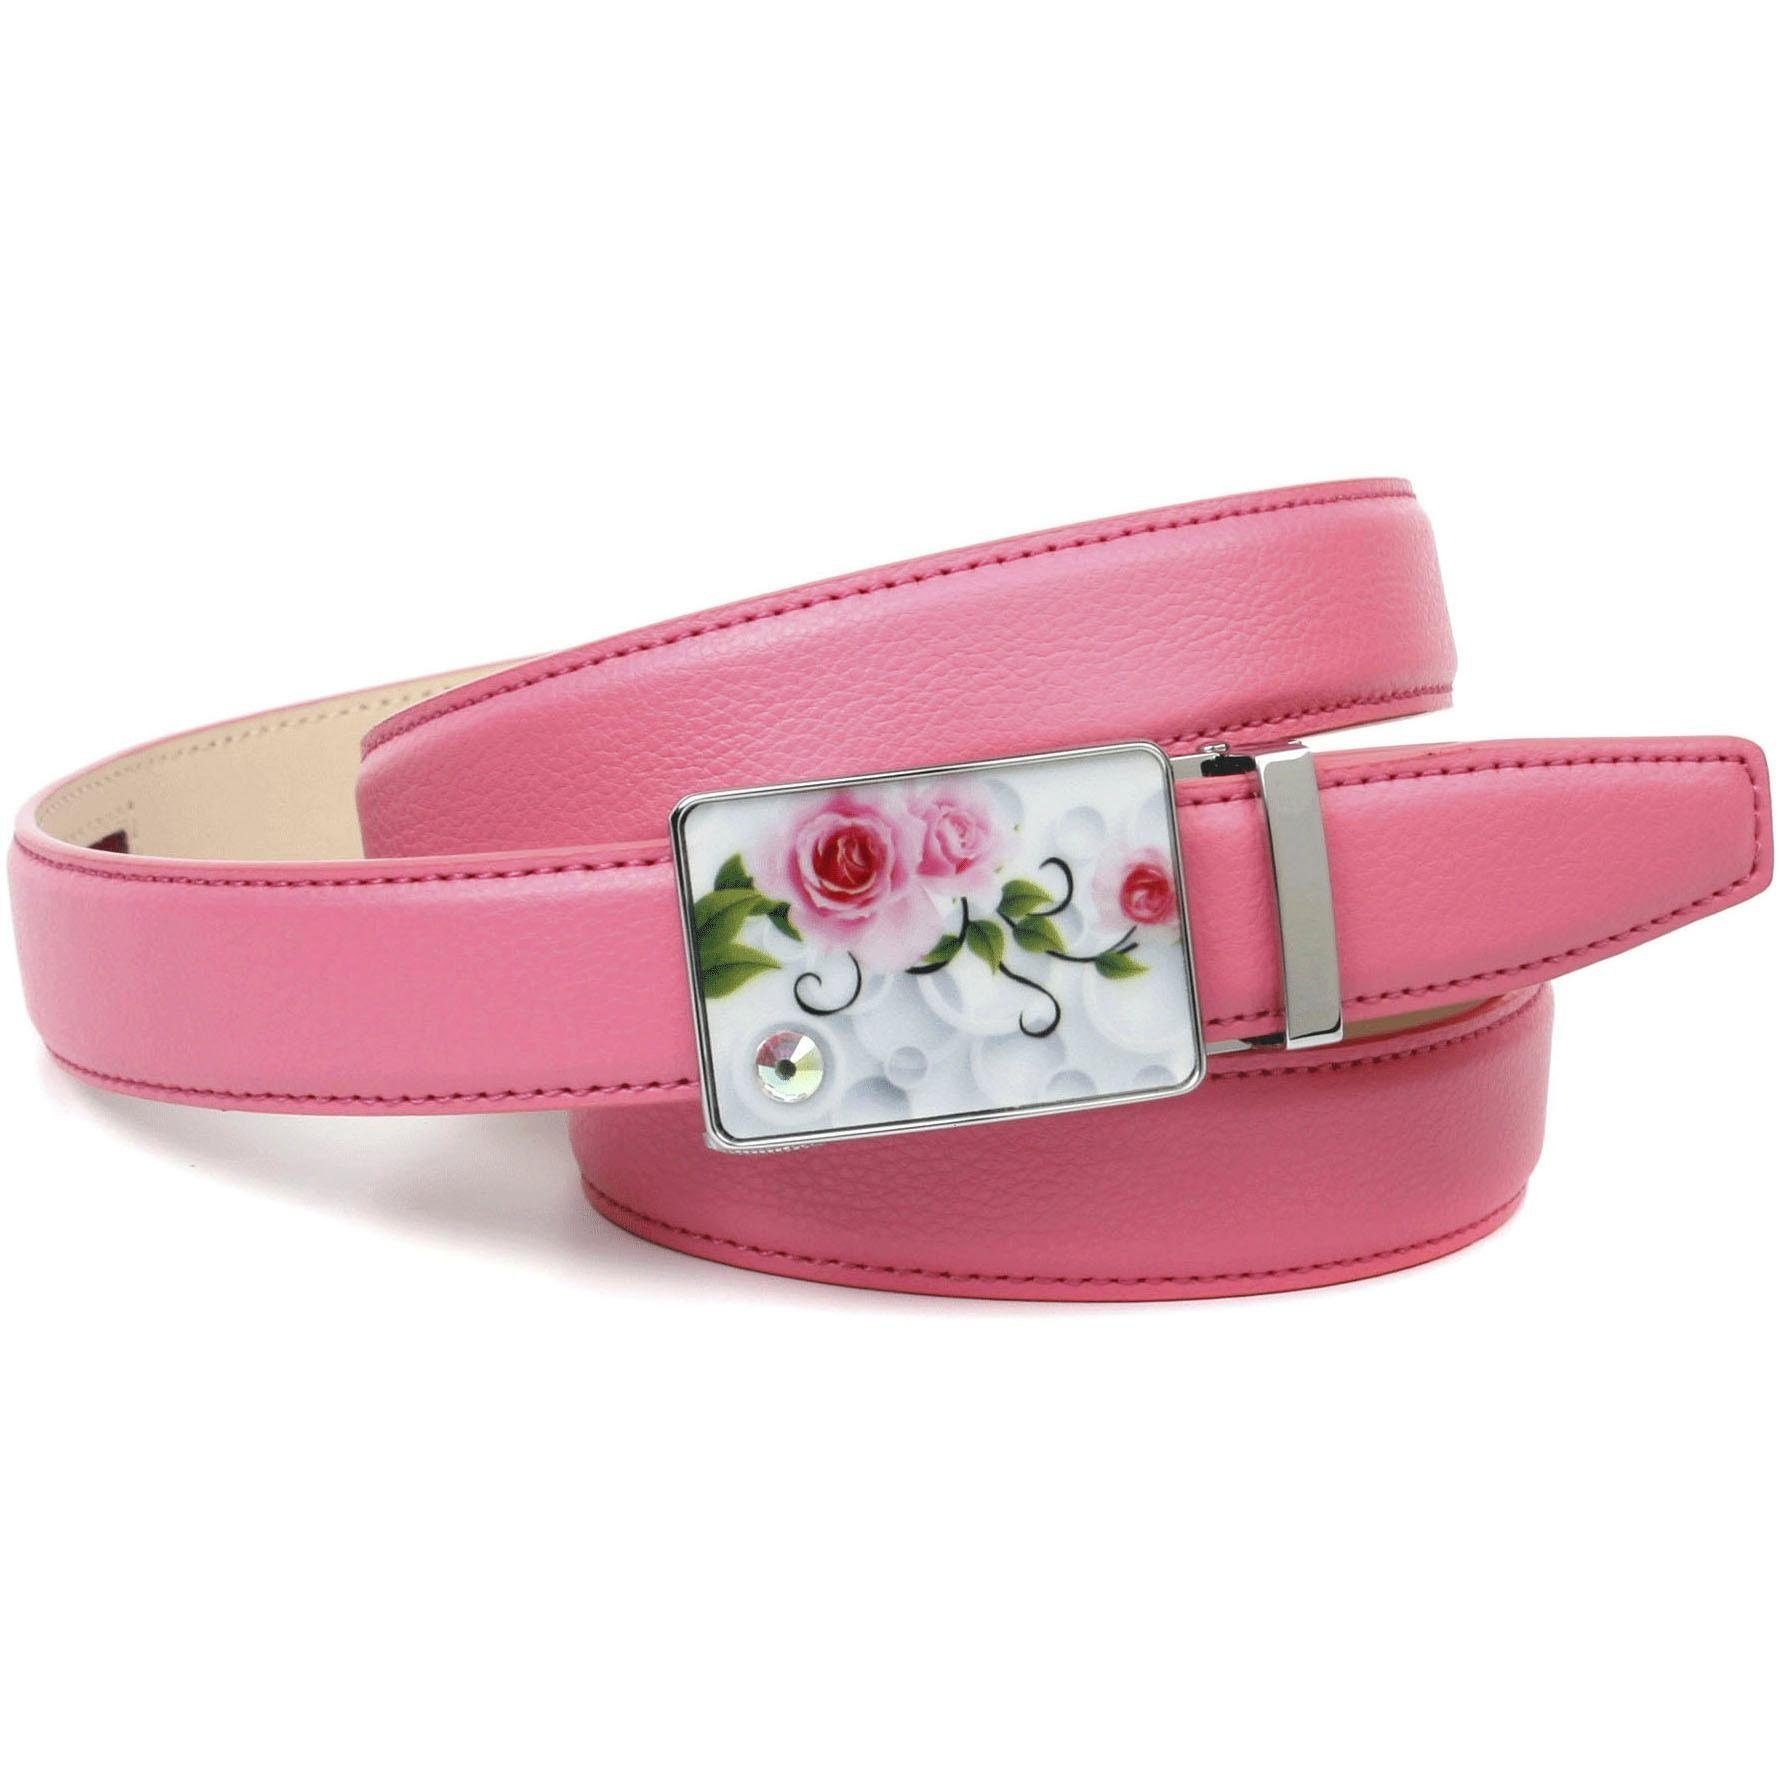 Anthoni Crown Ledergürtel stilvoll in rosa mit silberfarbener Schließe | Anzuggürtel